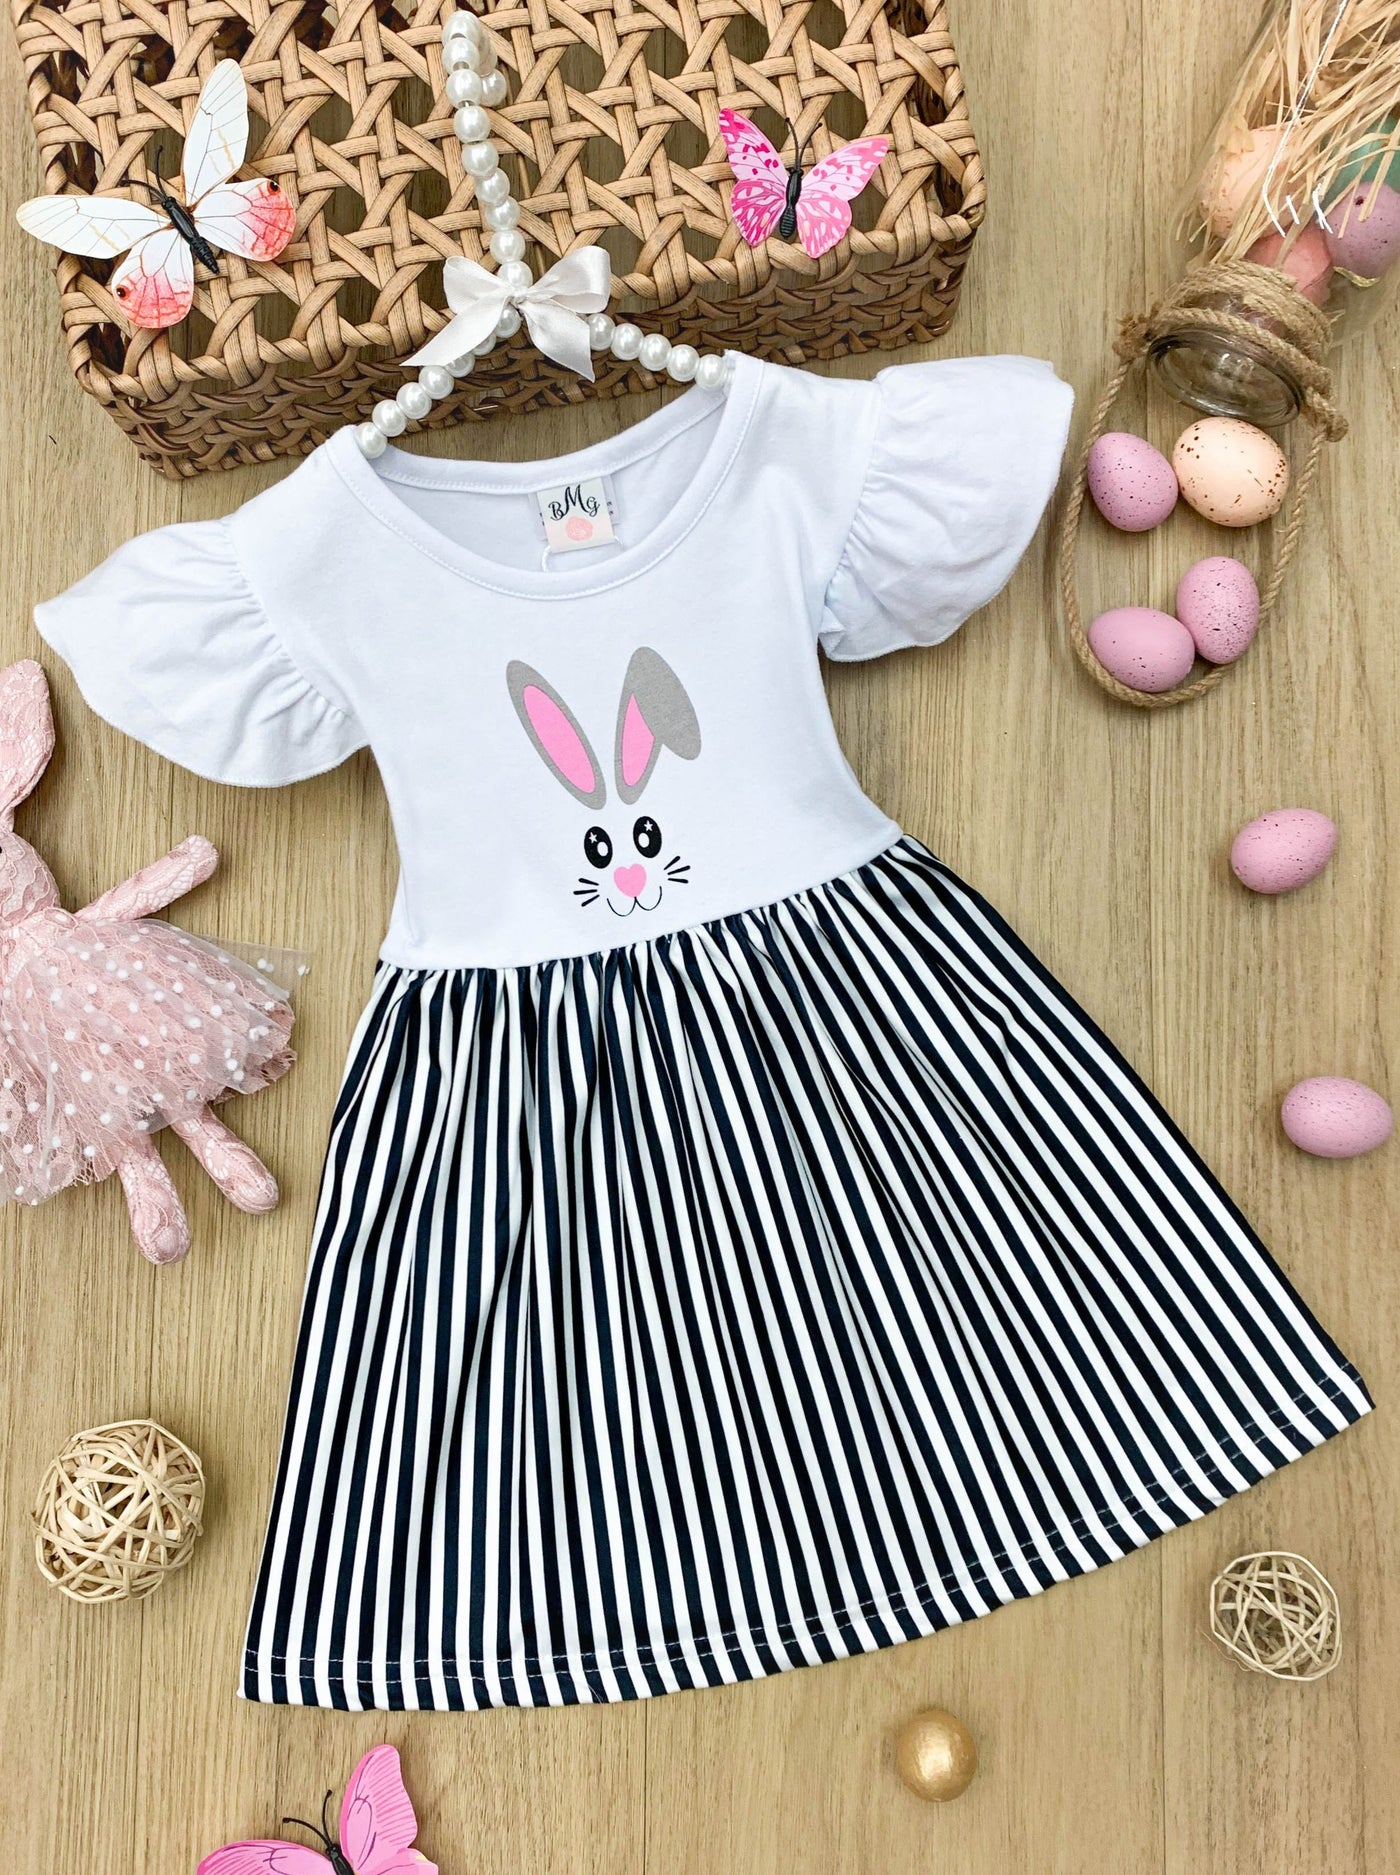 Mia Belle Girls Bunny Striped Skirt Easter Dress | Easter Dresses